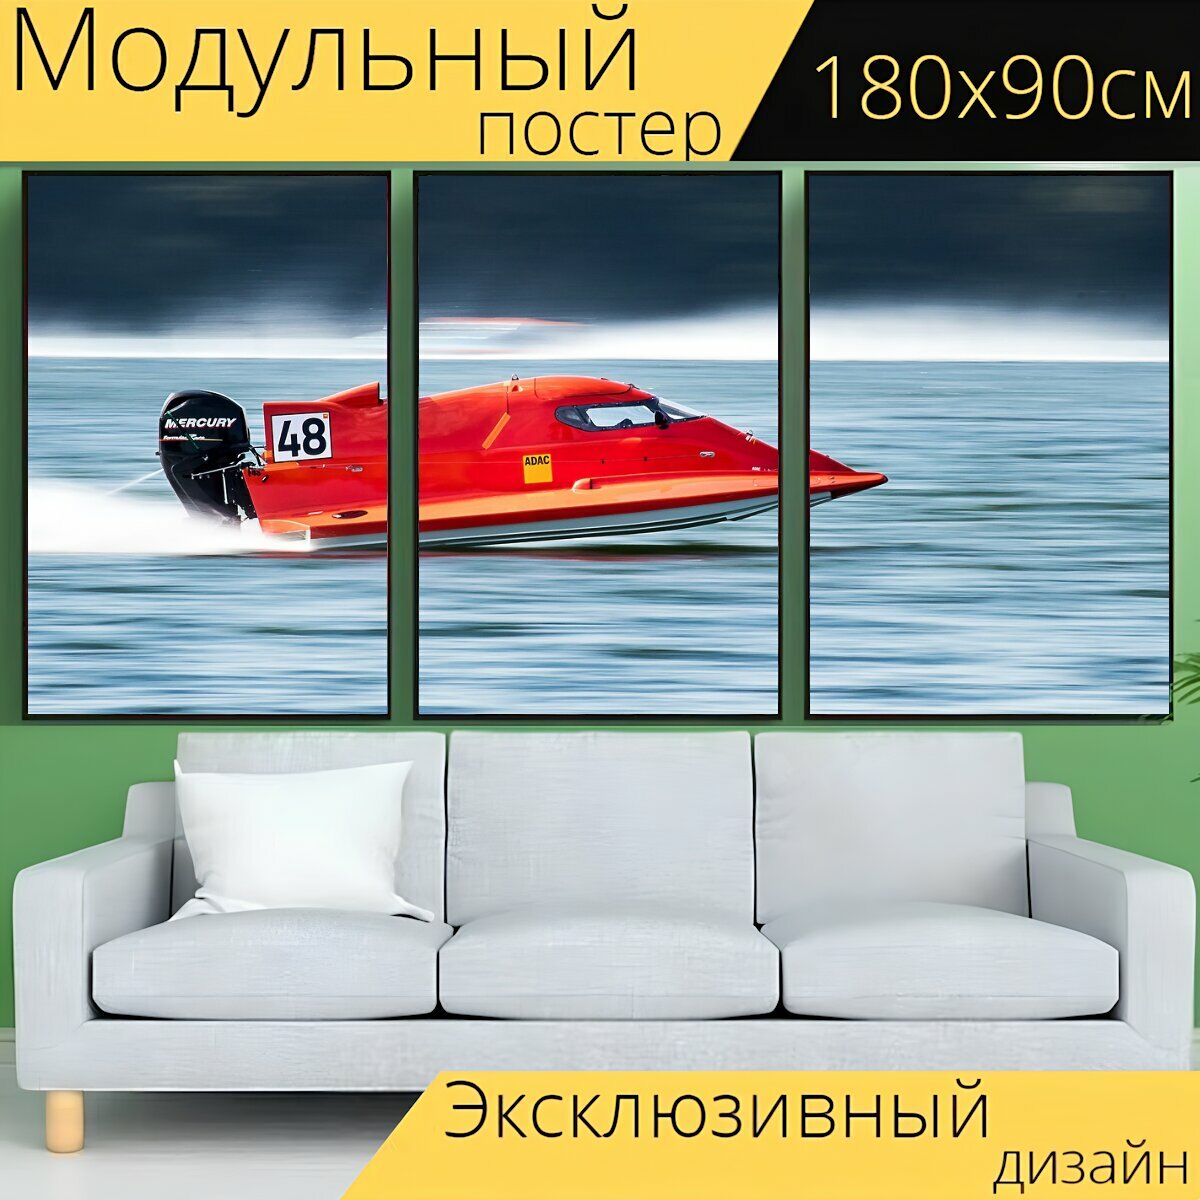 Модульный постер "Моторная лодка, скорость, быстроходный катер" 180 x 90 см. для интерьера